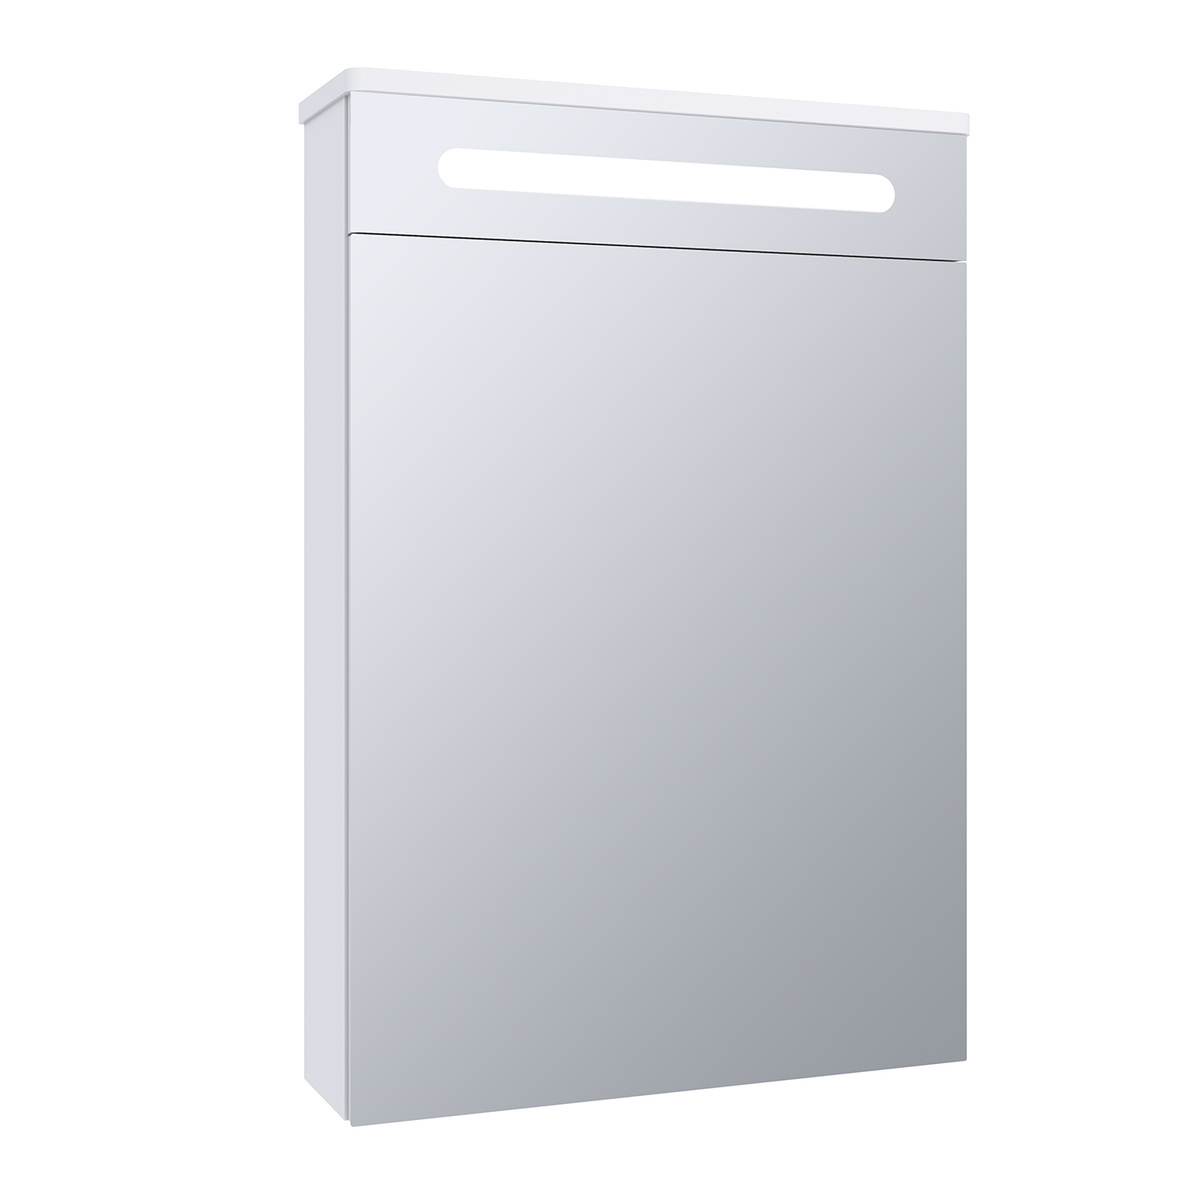 Зеркало шкаф для ванной / с подсветкой / Runo / Парма 50 Текст при отключенной в браузере загрузке изображений